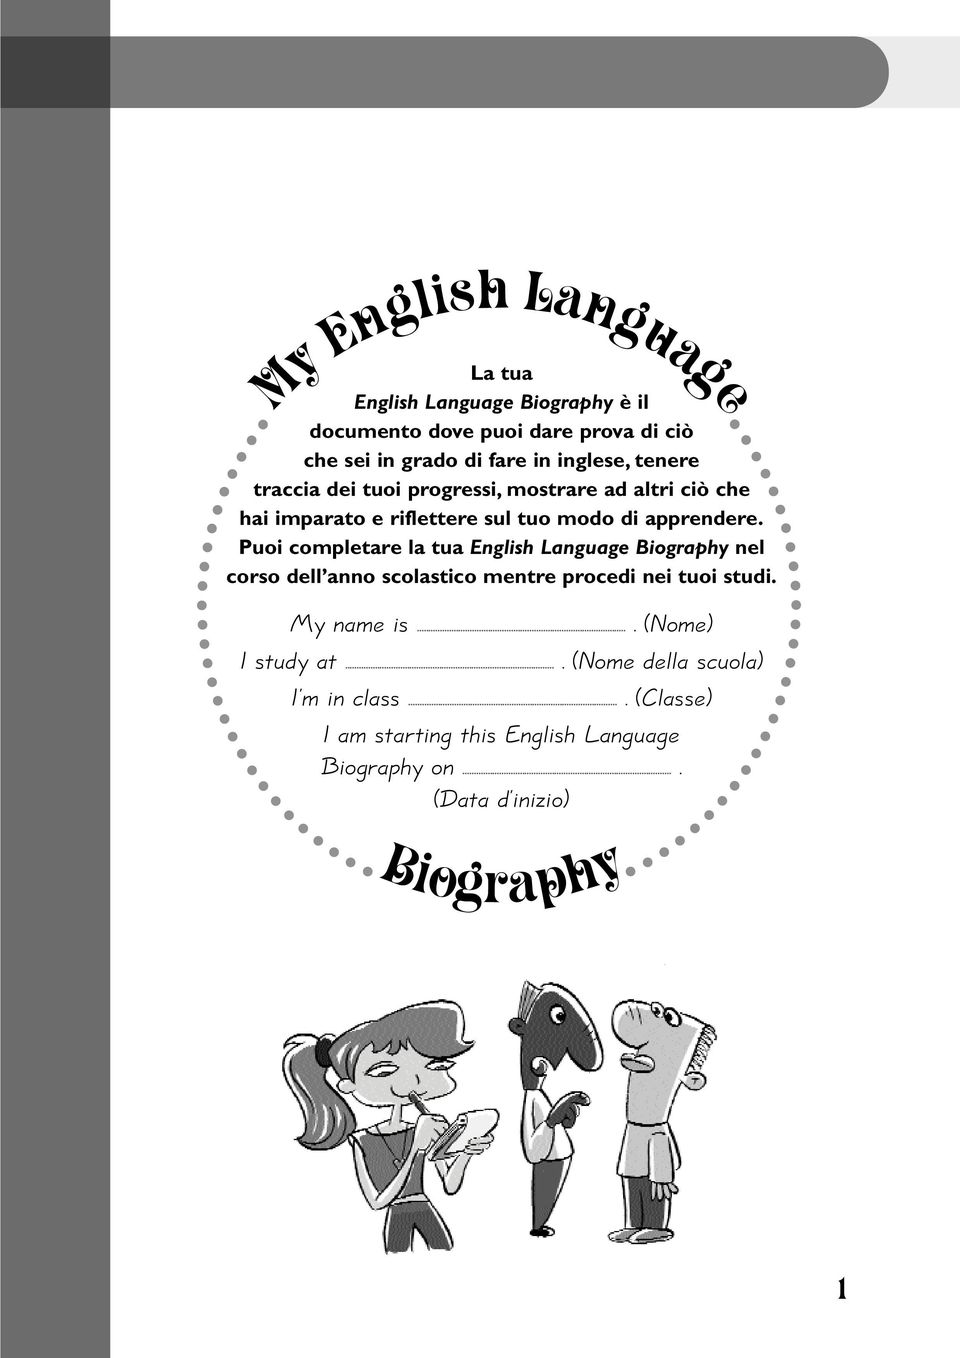 Puoi completare la tua English Language Biography nel corso dell anno scolastico mentre procedi nei tuoi studi.